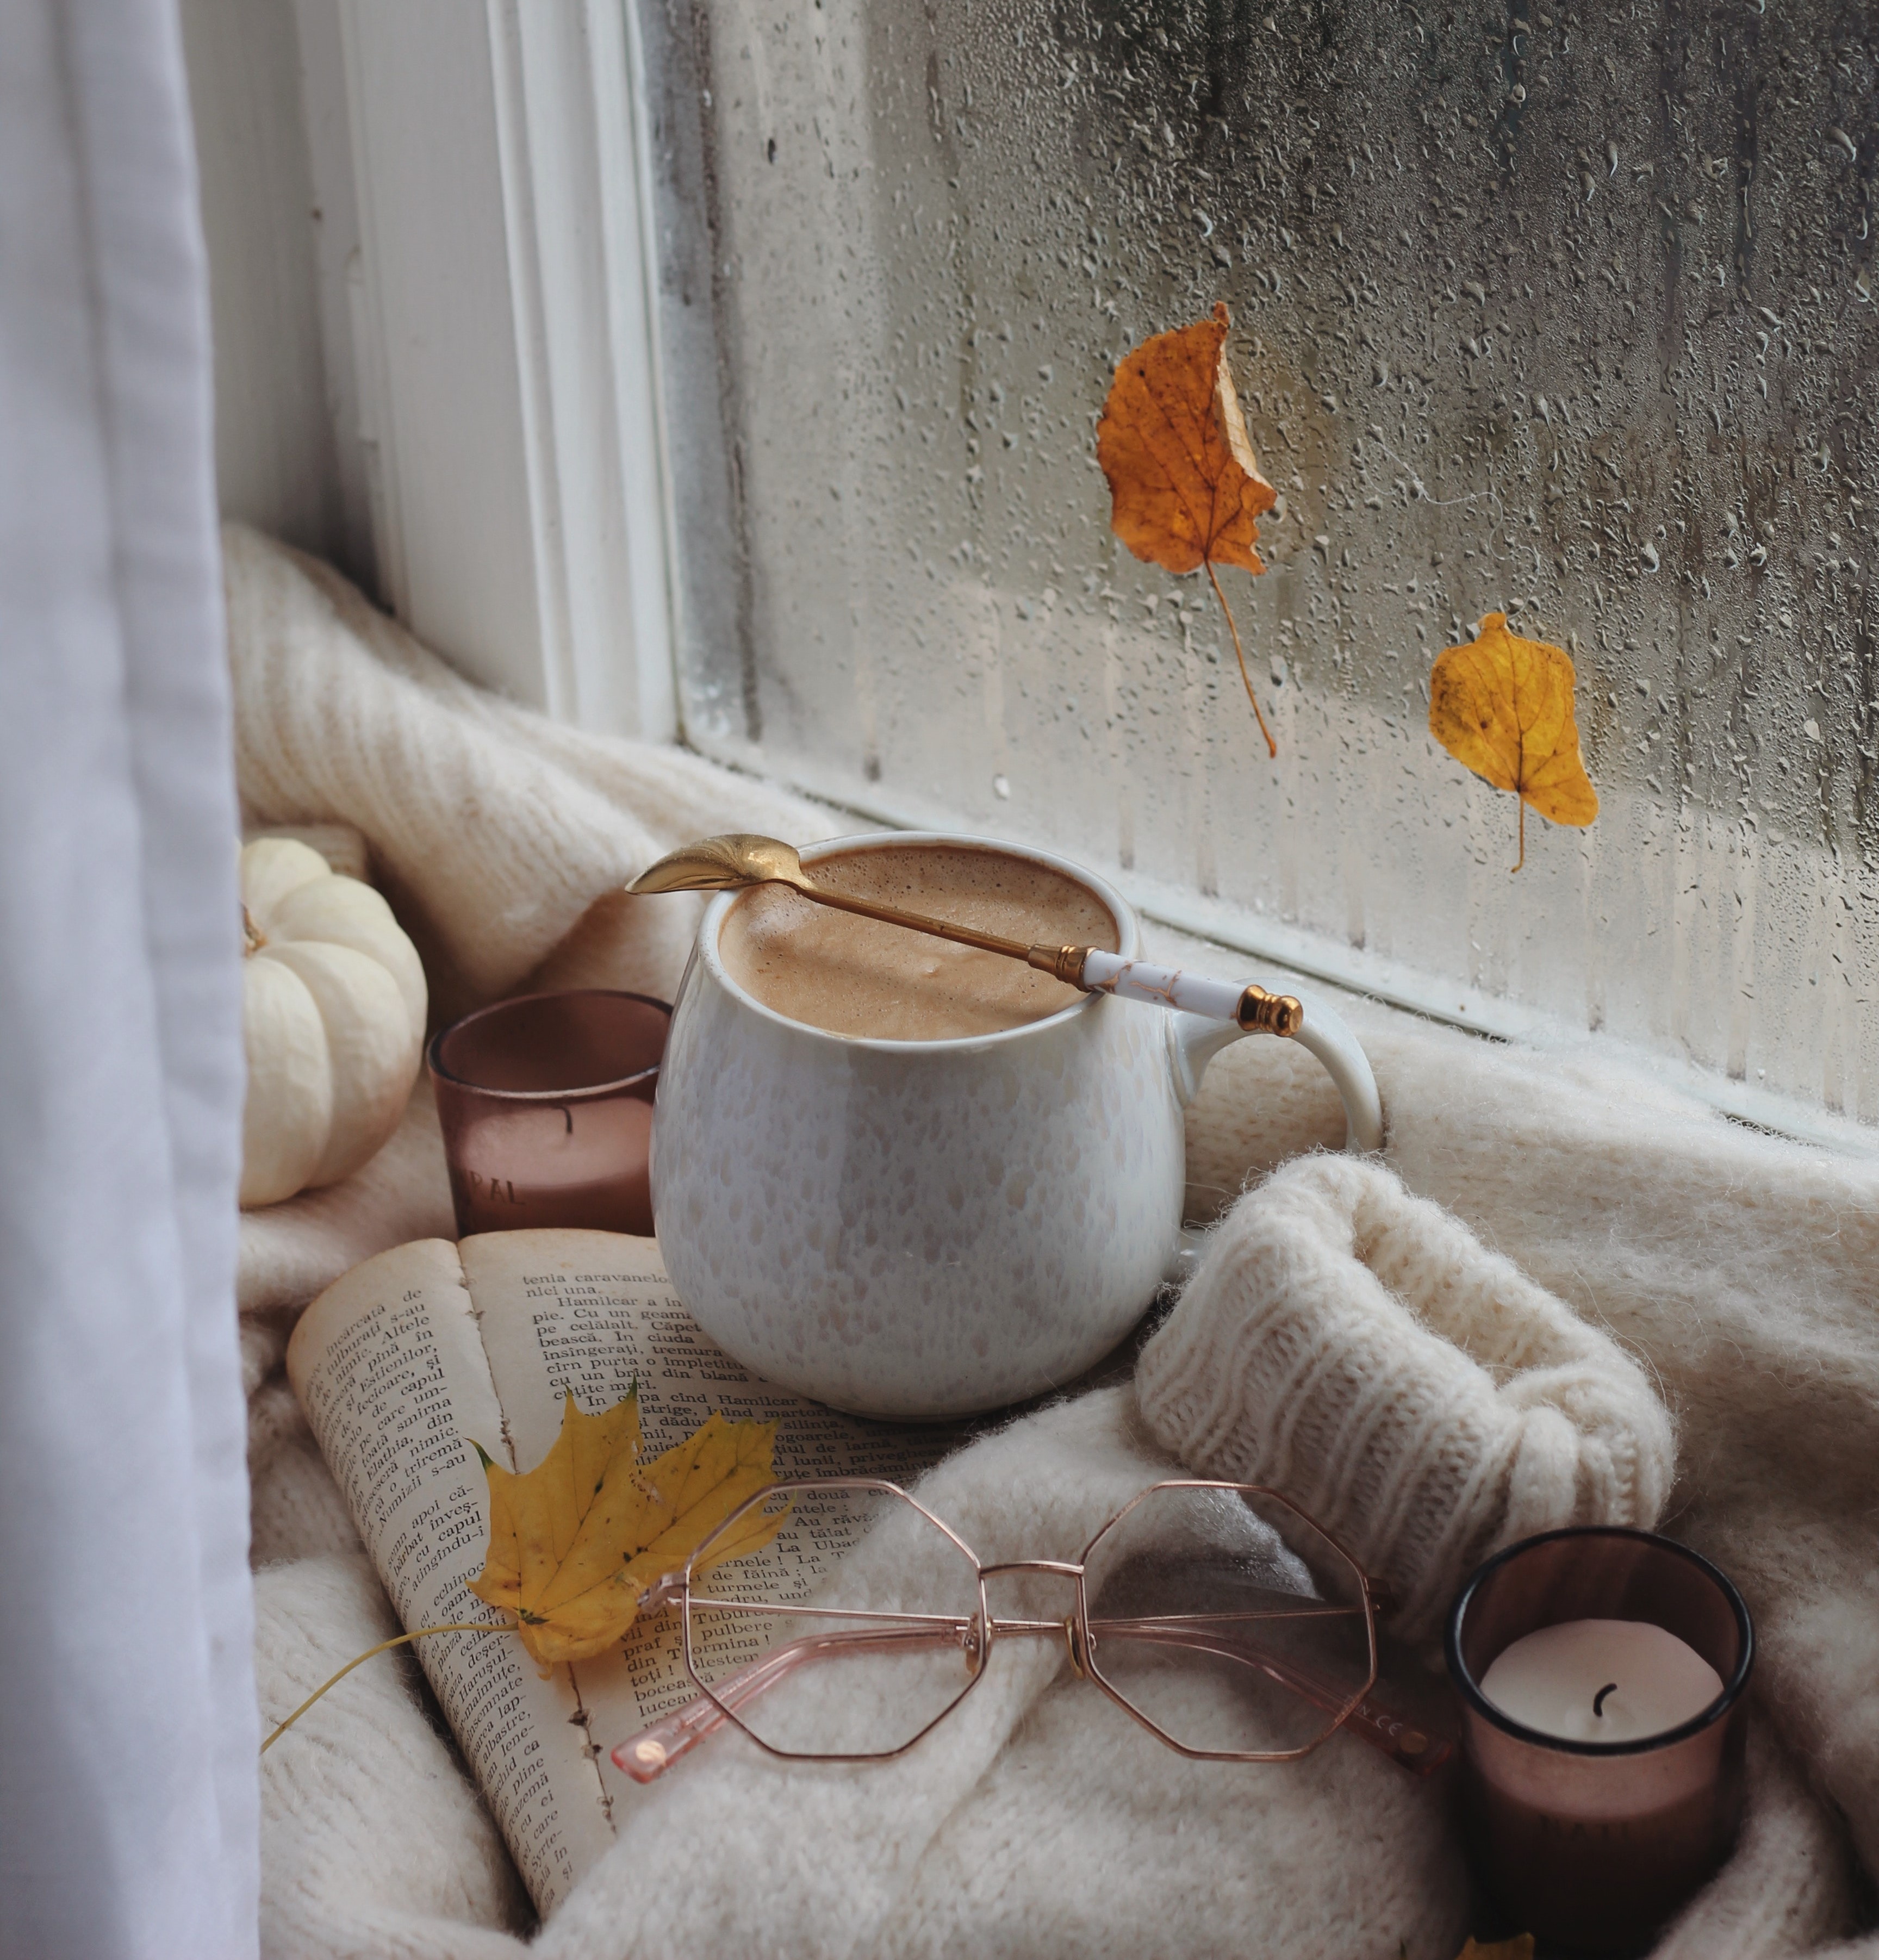 rainy window with mug of coffee and sweater